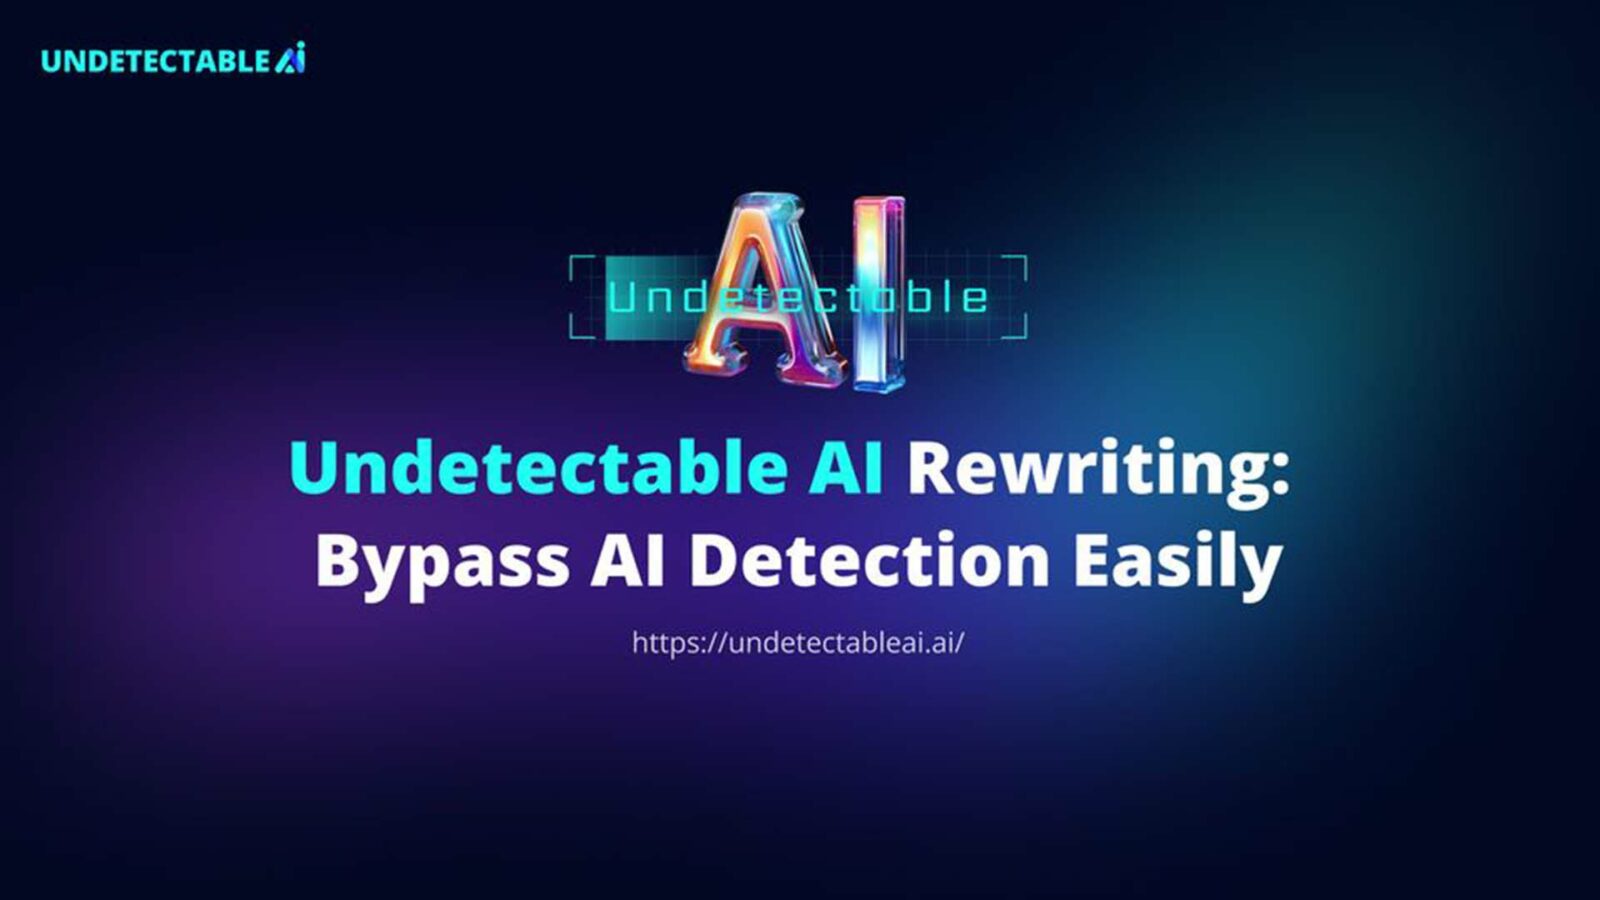 Das Bild zeigt eine digitale Werbung mit der Aufschrift „Undetectable AI Rewriting: Bypass Ai Detection Easy“ über einer Website-URL auf blauem Hintergrund.